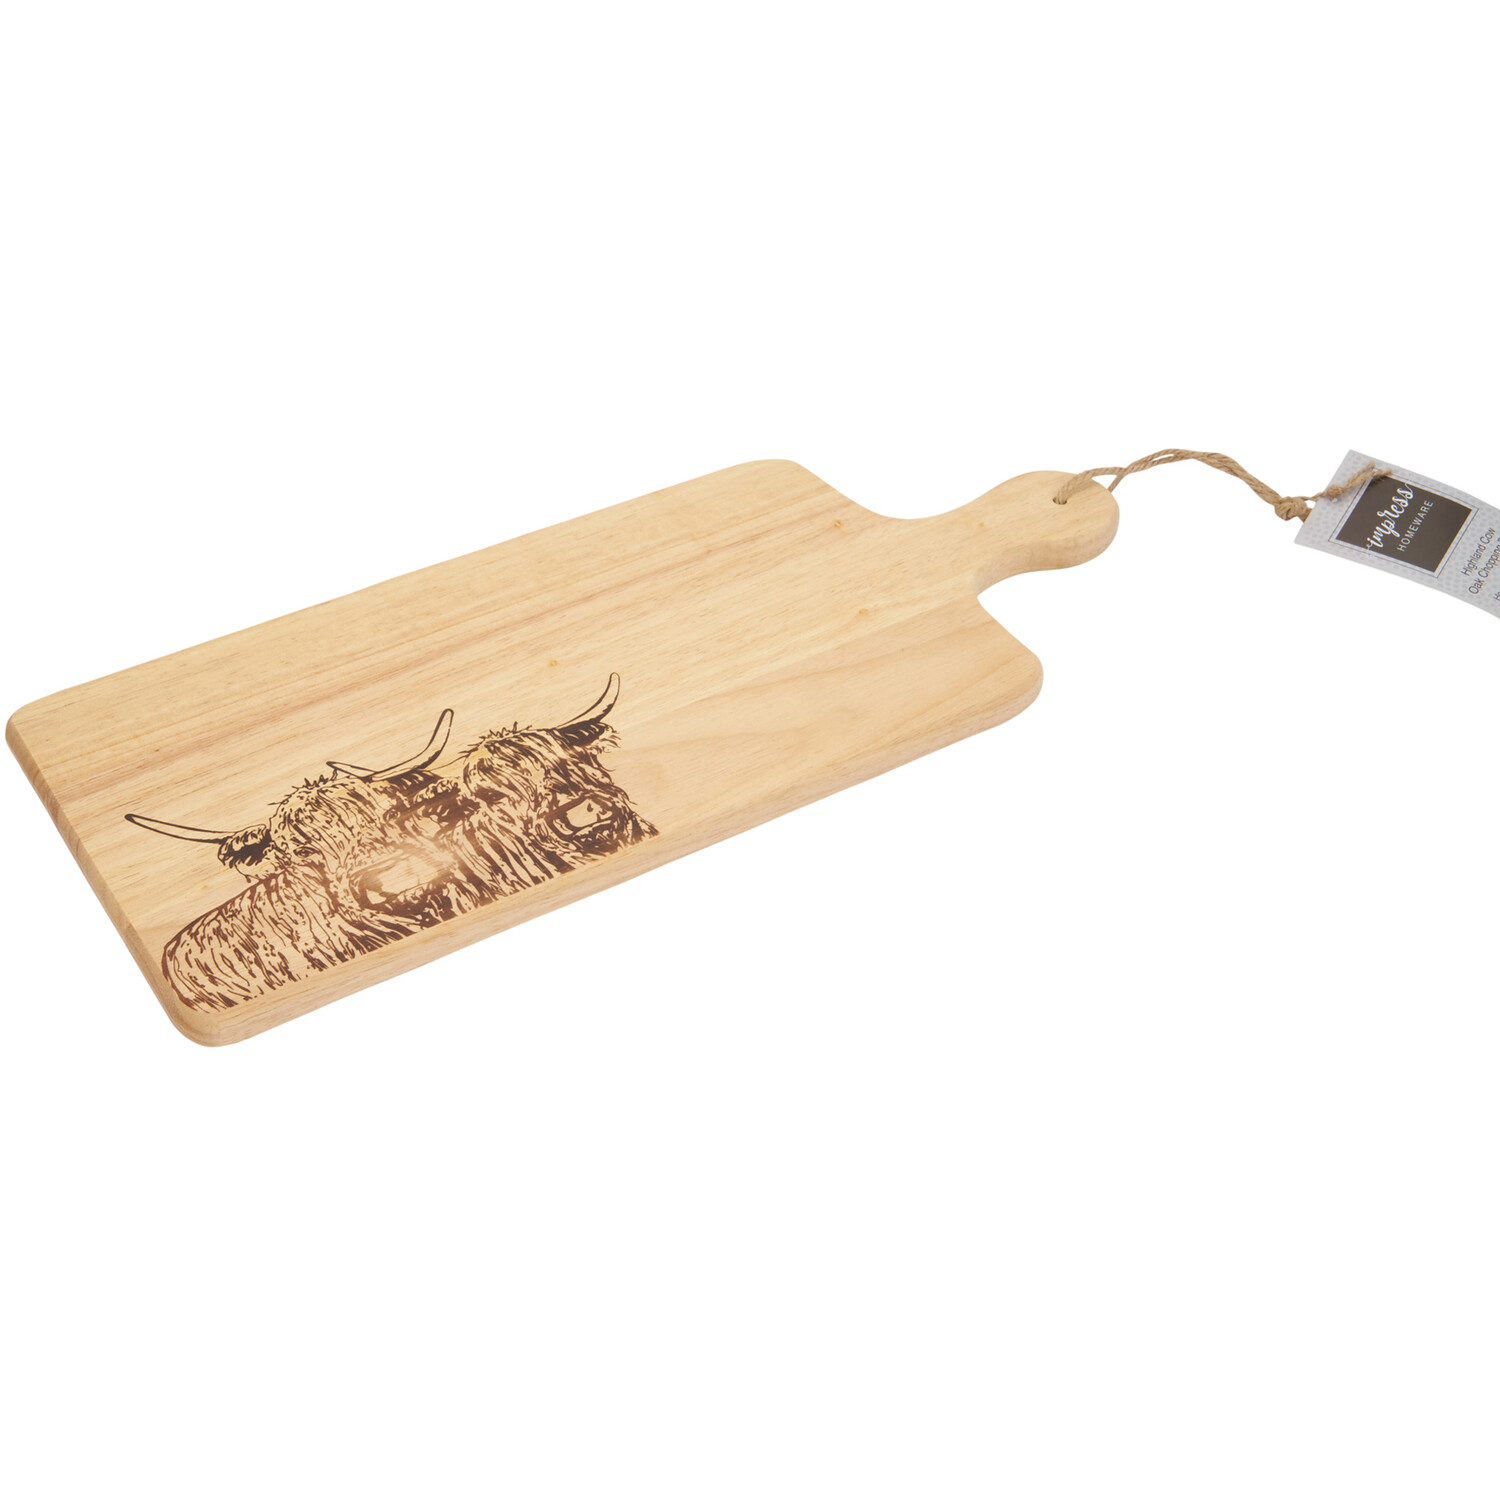 Highland Cow Paddle Chopping Board - Oak Image 1